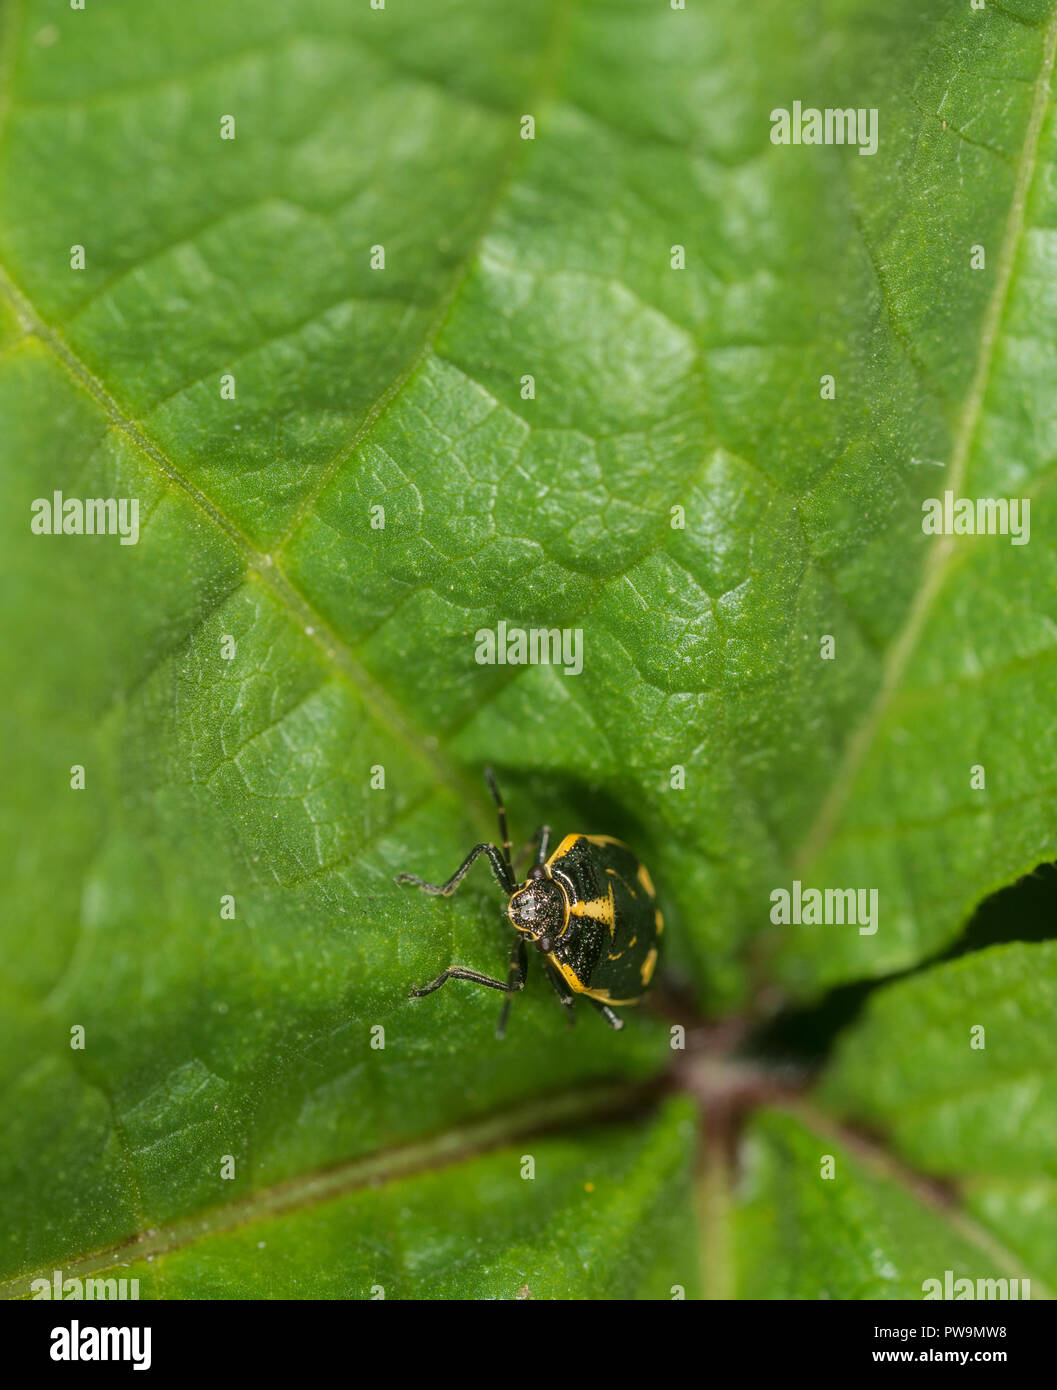 Shieldbug nymph on a green leaf Stock Photo